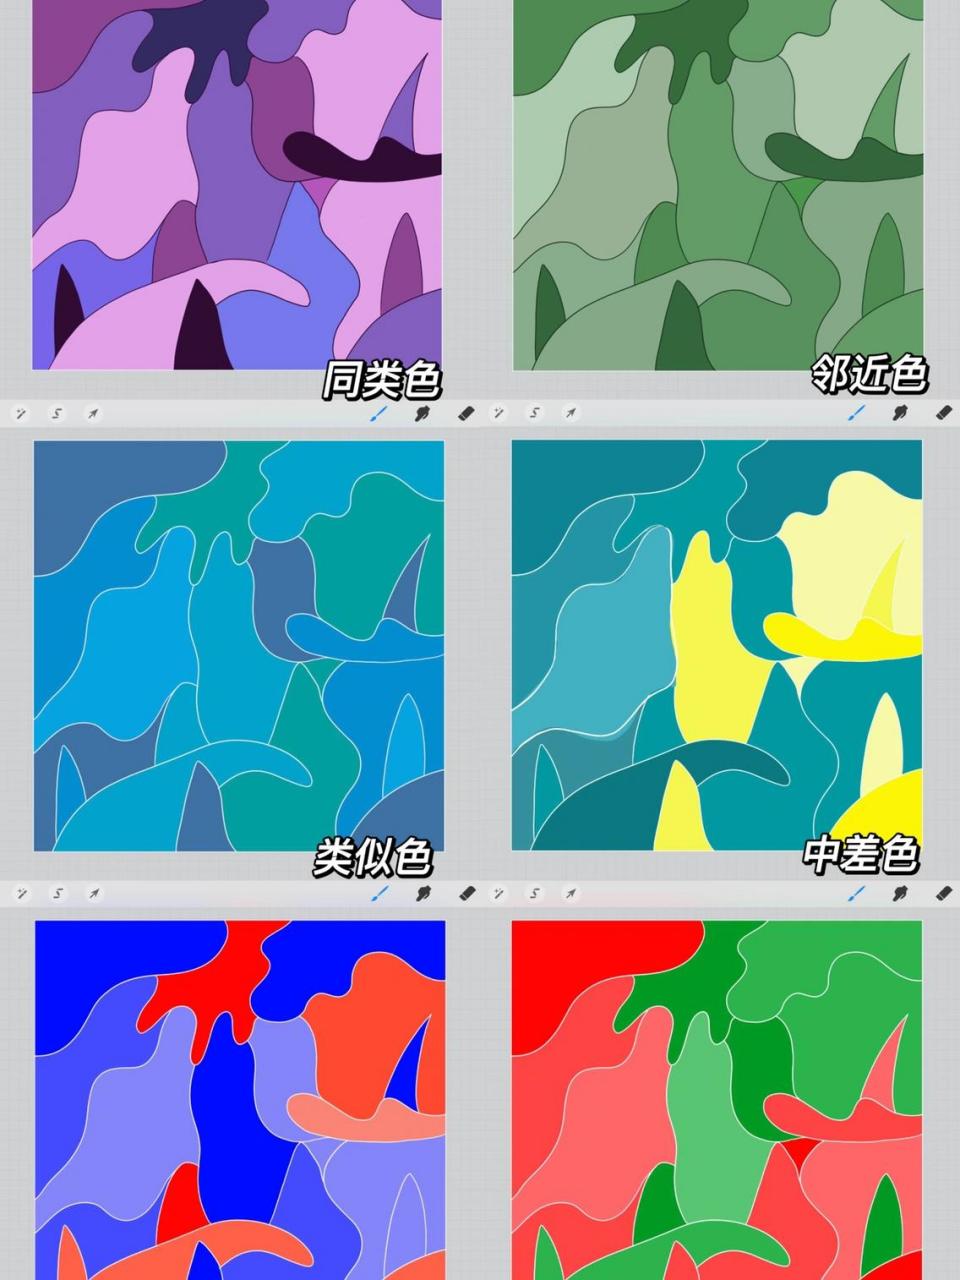 图案设计综合构成 色彩作业 同类色 邻近色 类似色 中差色 对比色